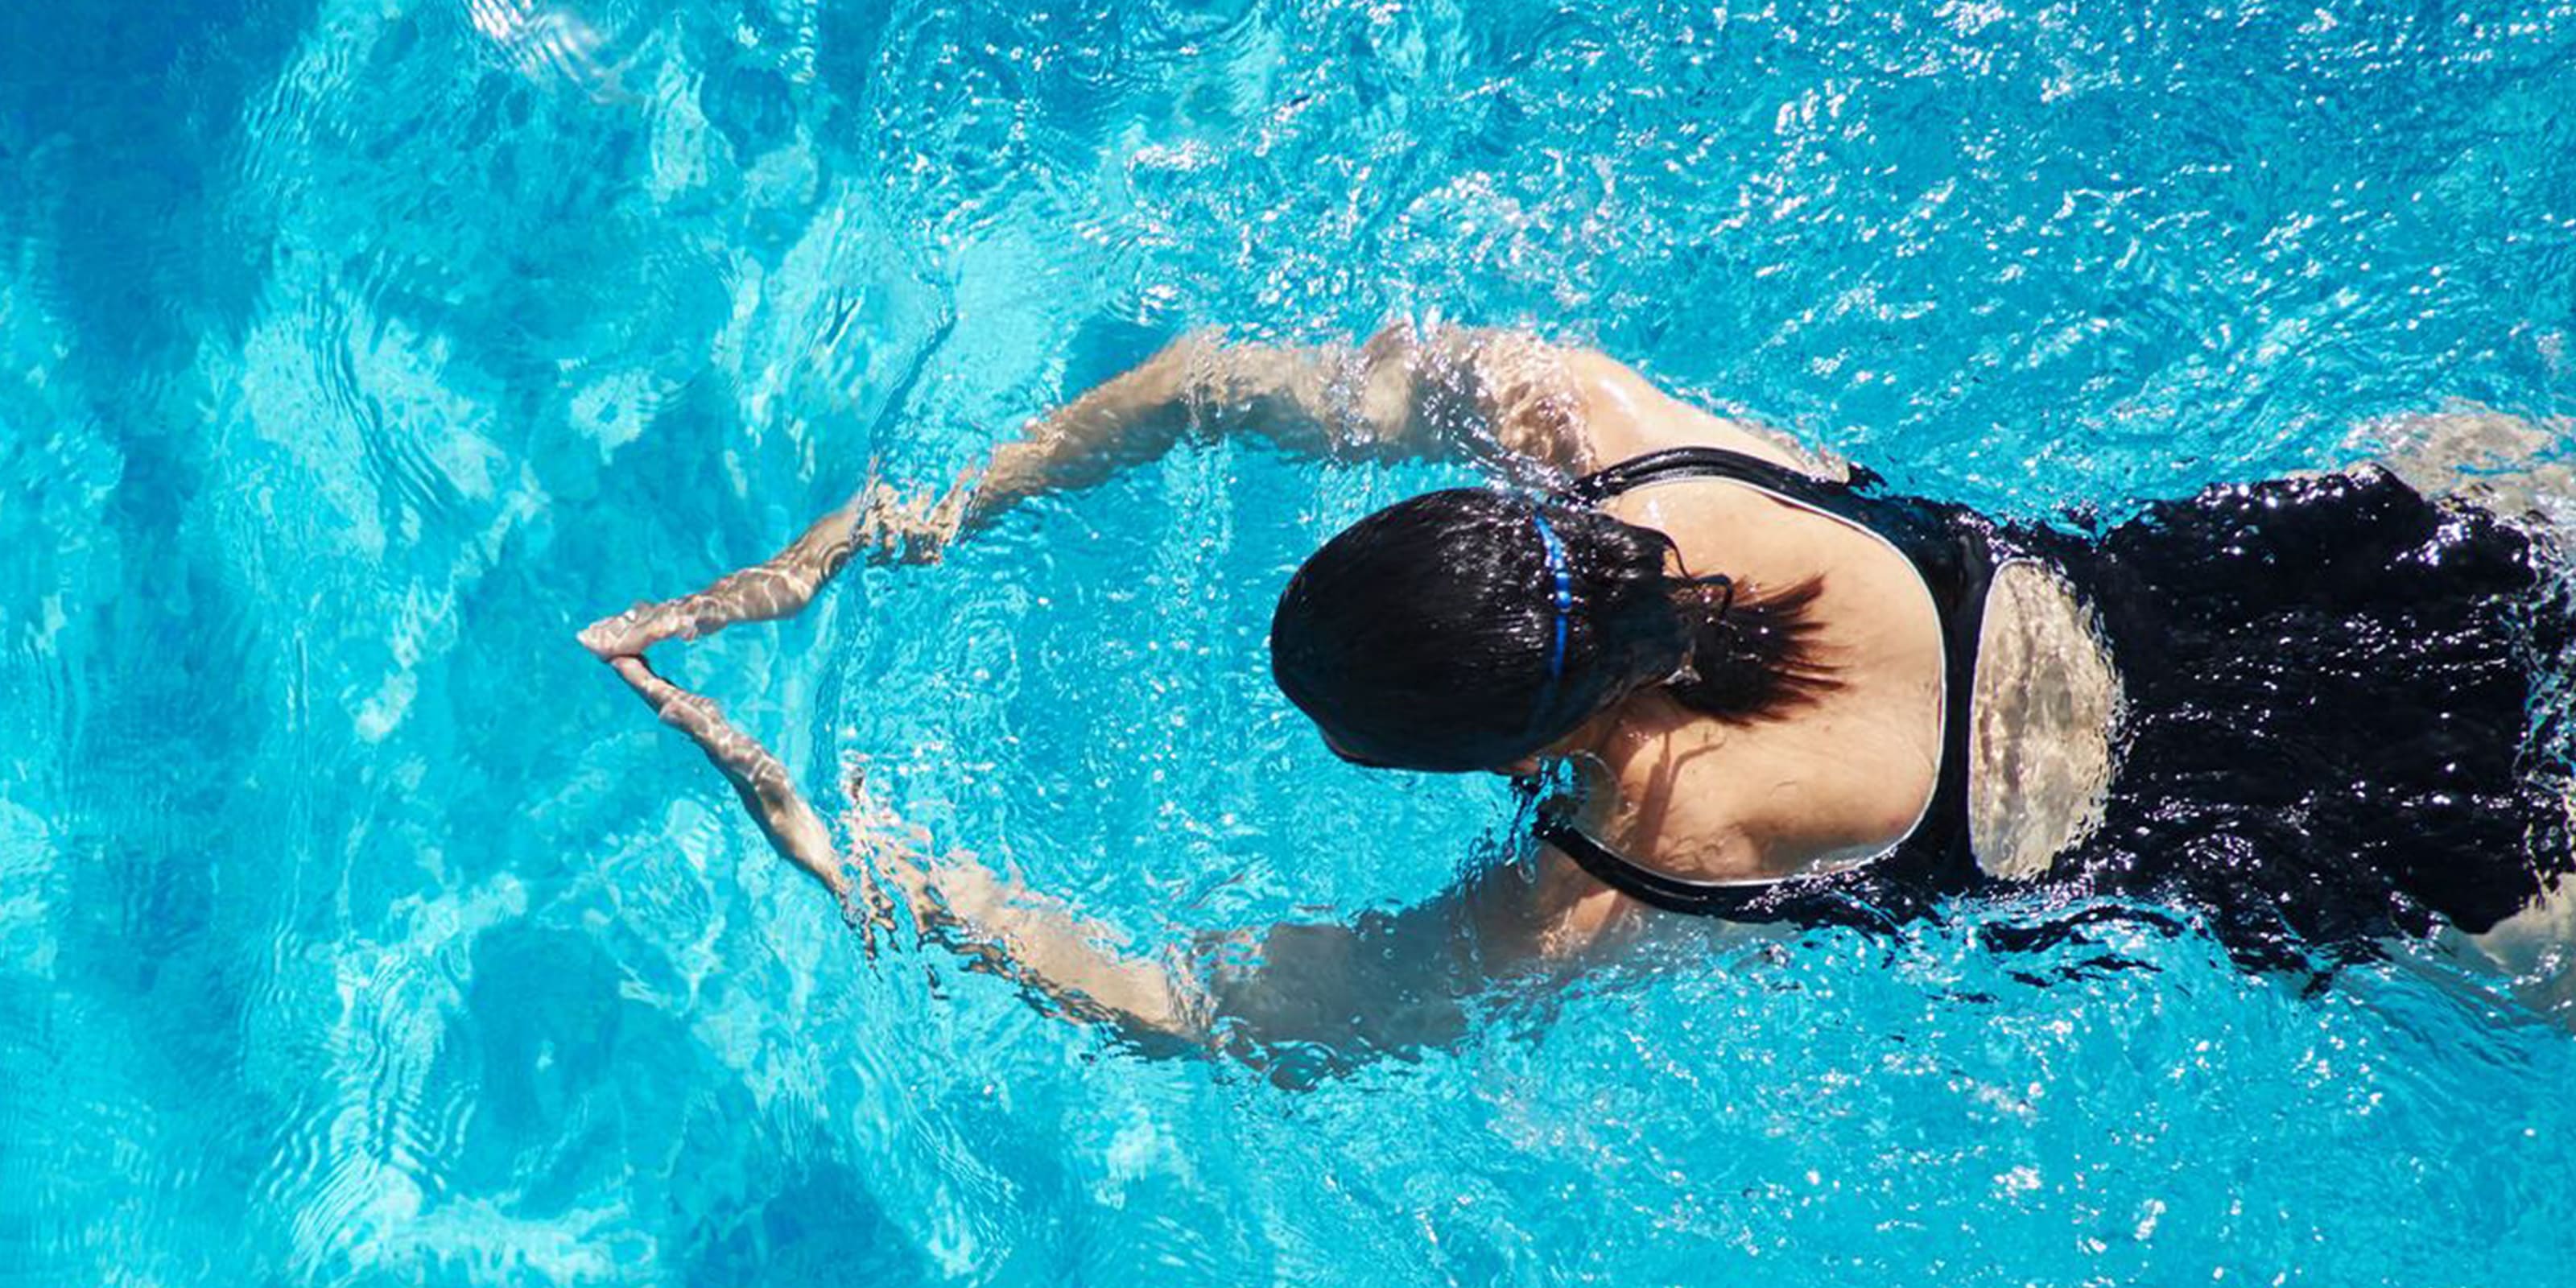 Frau in Badeanzug trainiert Brustschwimmen.